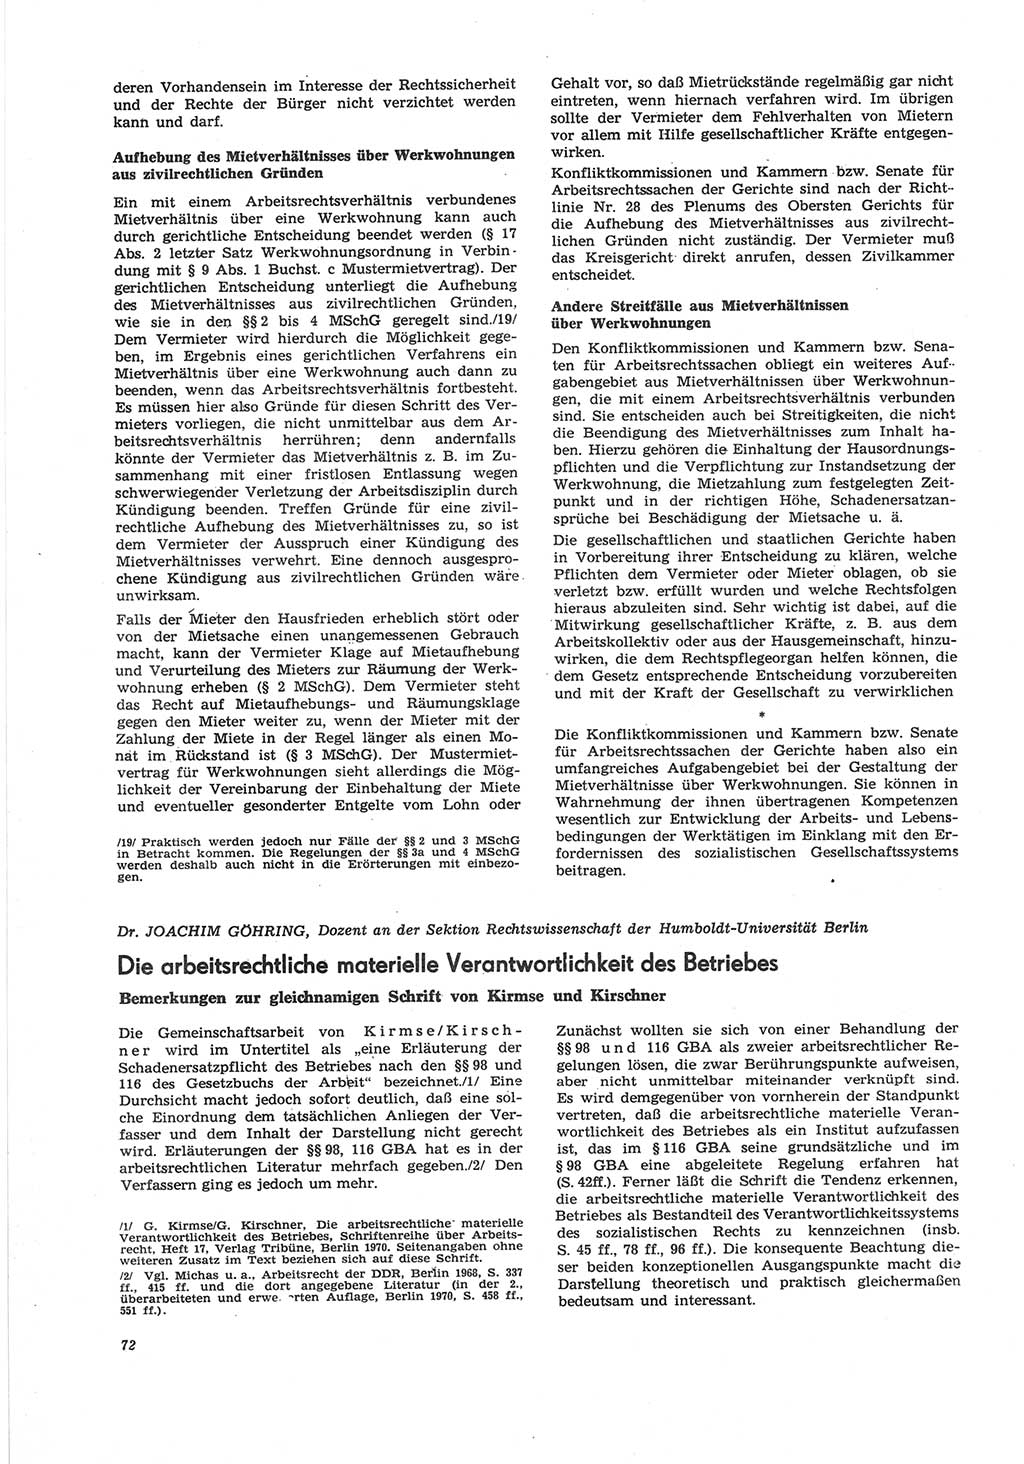 Neue Justiz (NJ), Zeitschrift für Recht und Rechtswissenschaft [Deutsche Demokratische Republik (DDR)], 25. Jahrgang 1971, Seite 72 (NJ DDR 1971, S. 72)